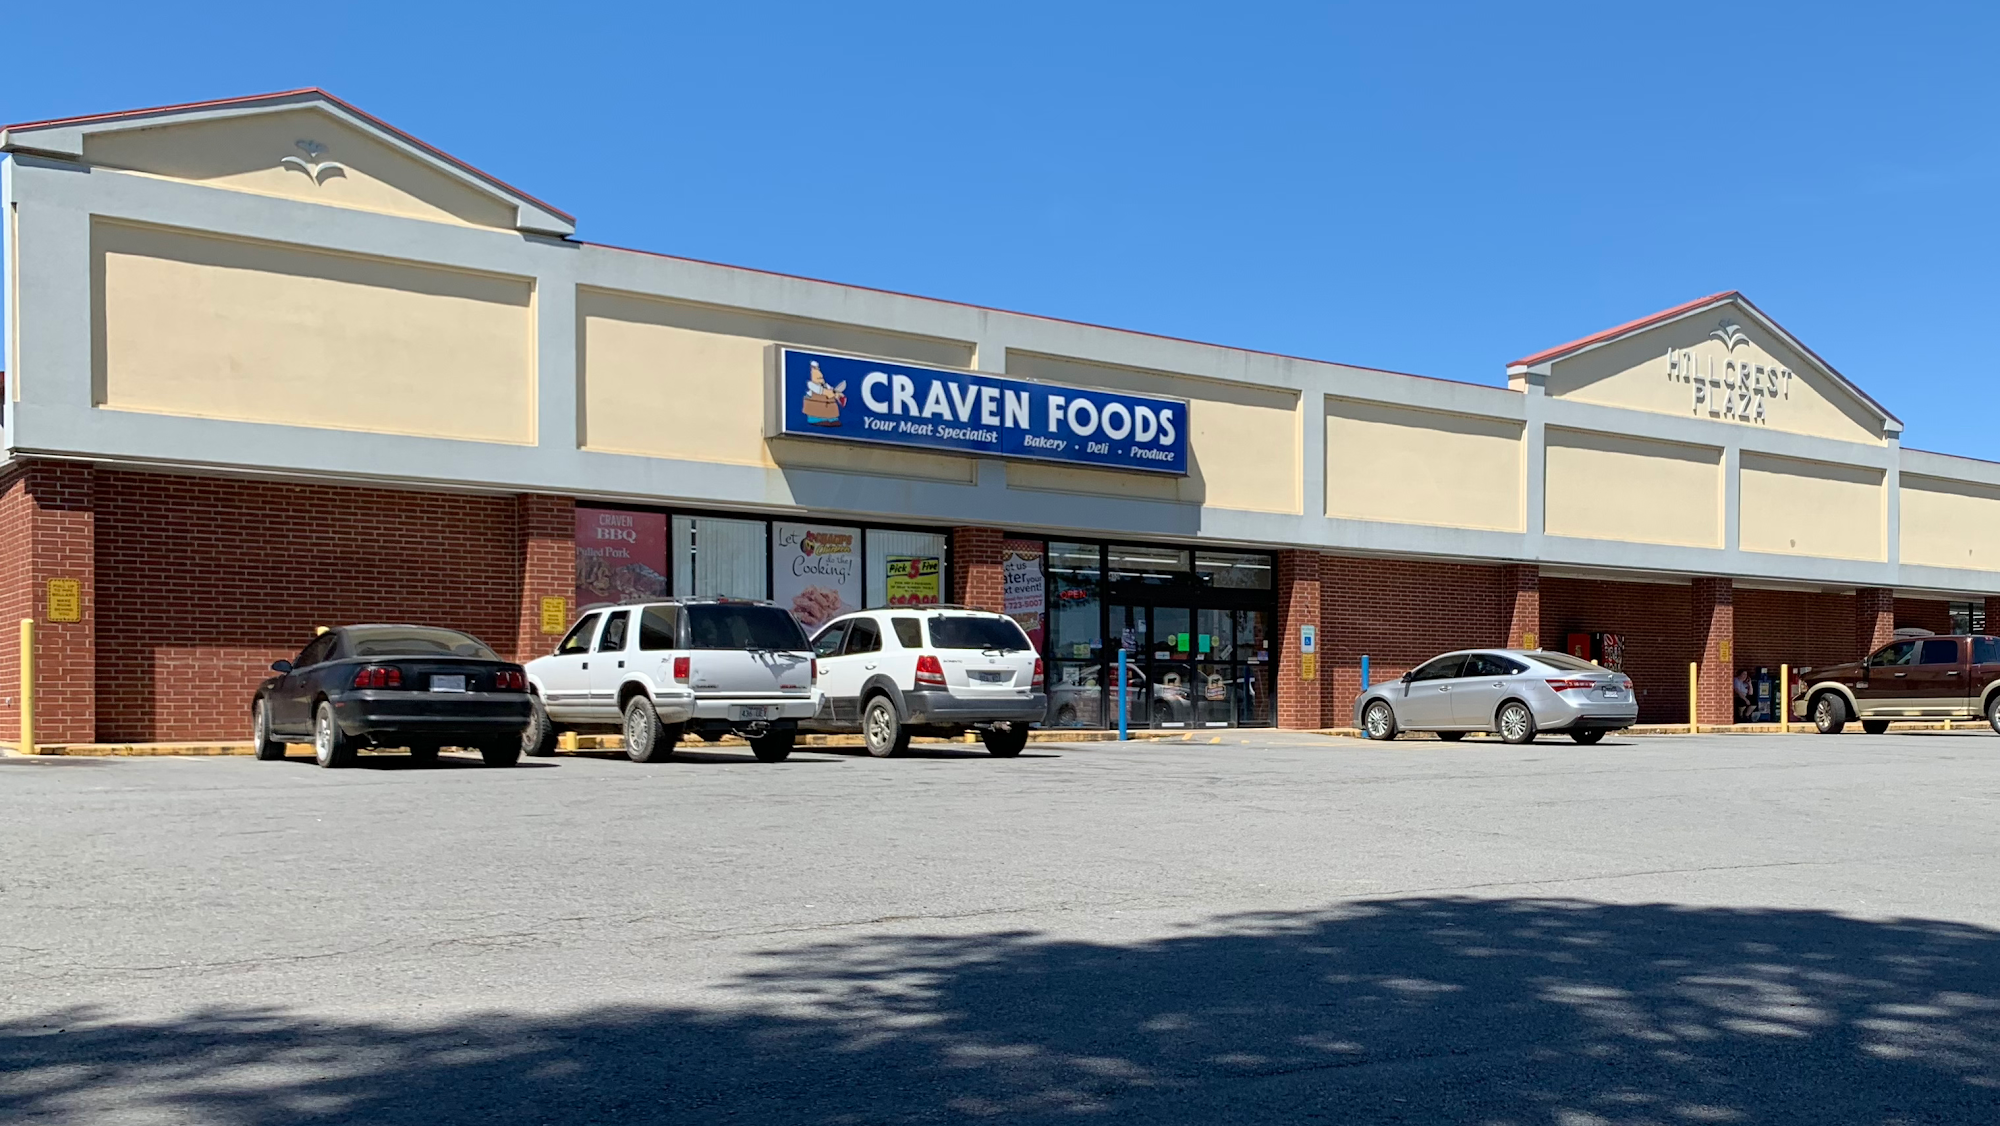 Craven Foods